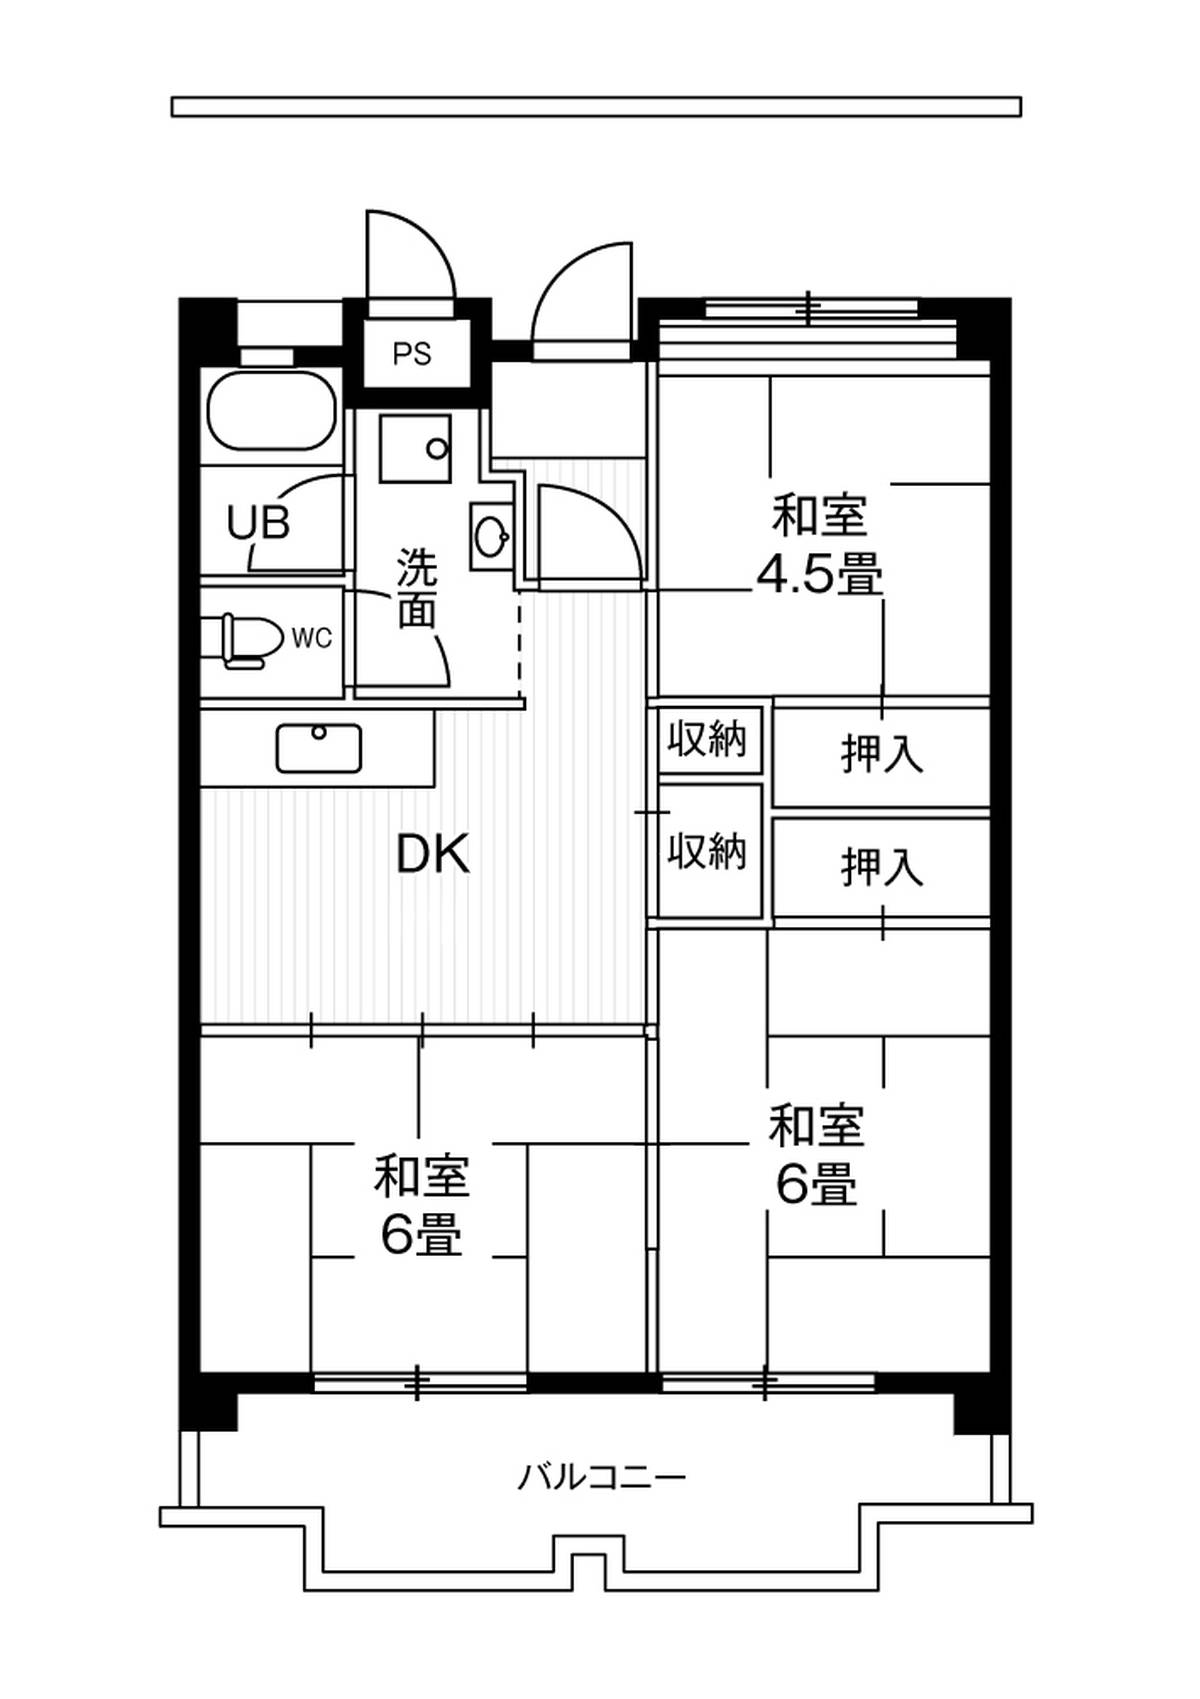 Sơ đồ phòng 3DK của Village House Ichinomiya Tower ở Ichinomiya-shi